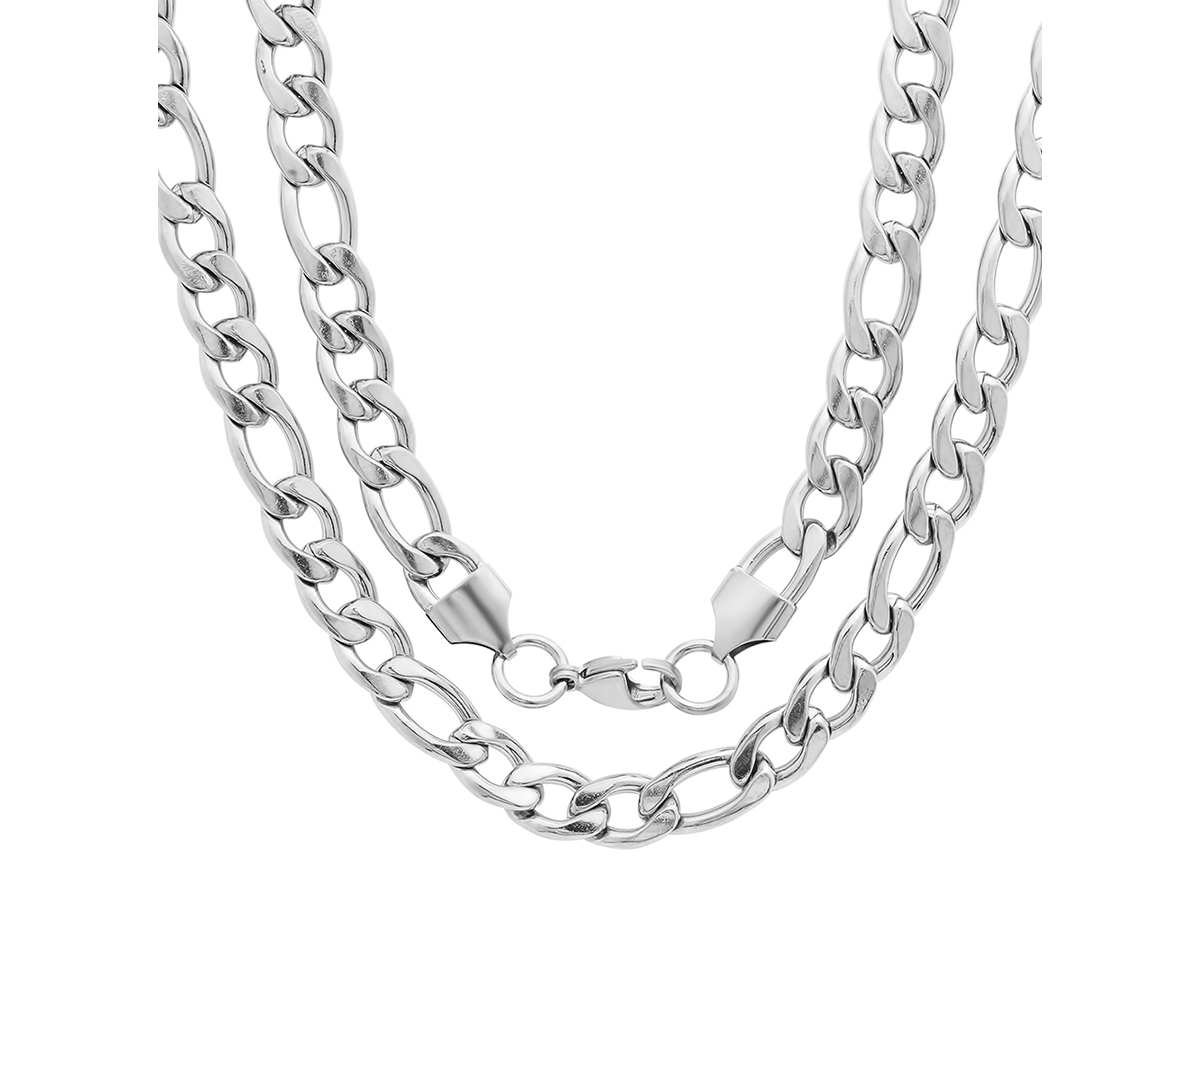 Shop Steeltime Men's Silver-tone Franco Chain Necklace, 24"